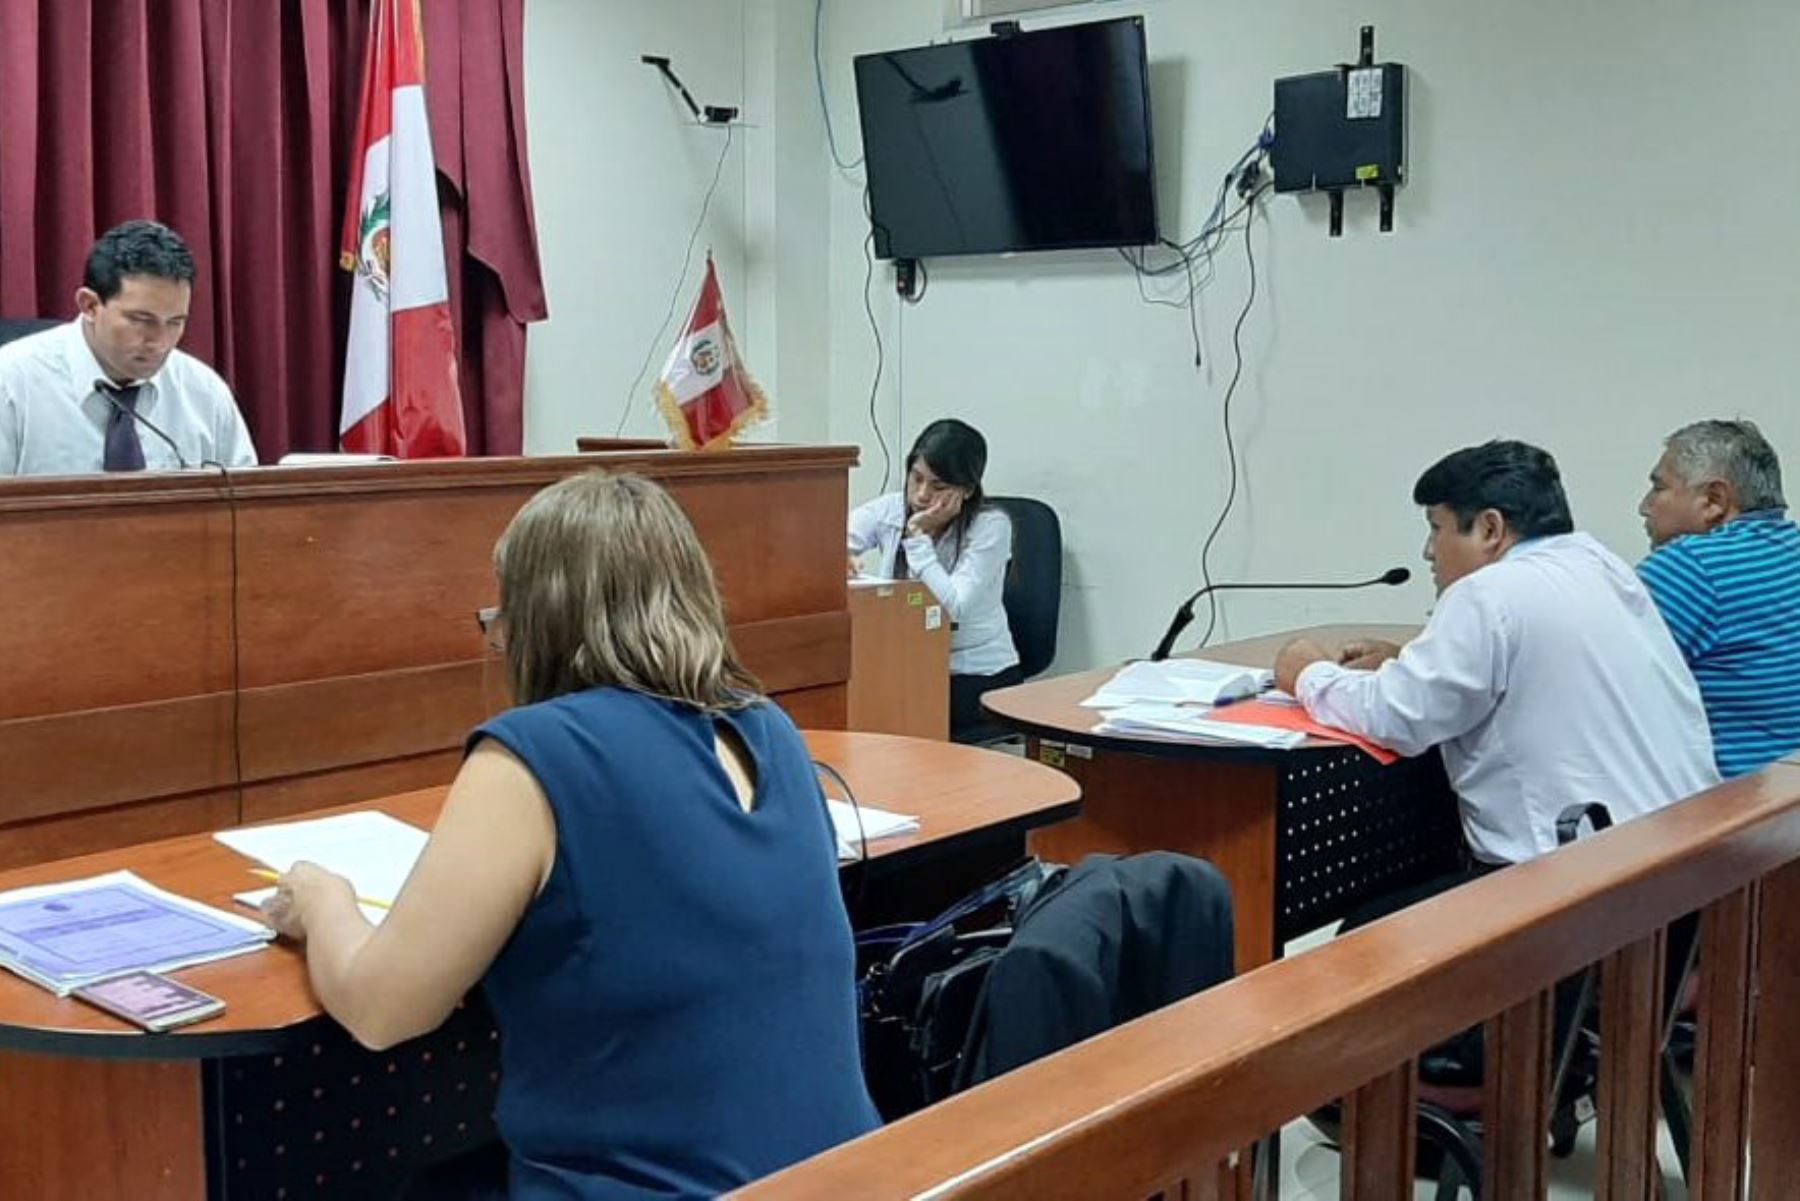 El juez de Chimbote Efer Díaz Uriarte dirigió audiencia en la que se vio pedido de detención con fines de extradición contra el ciudadano peruano Cristian Paredes Oliva, acusado de violar a menor de edad en España.